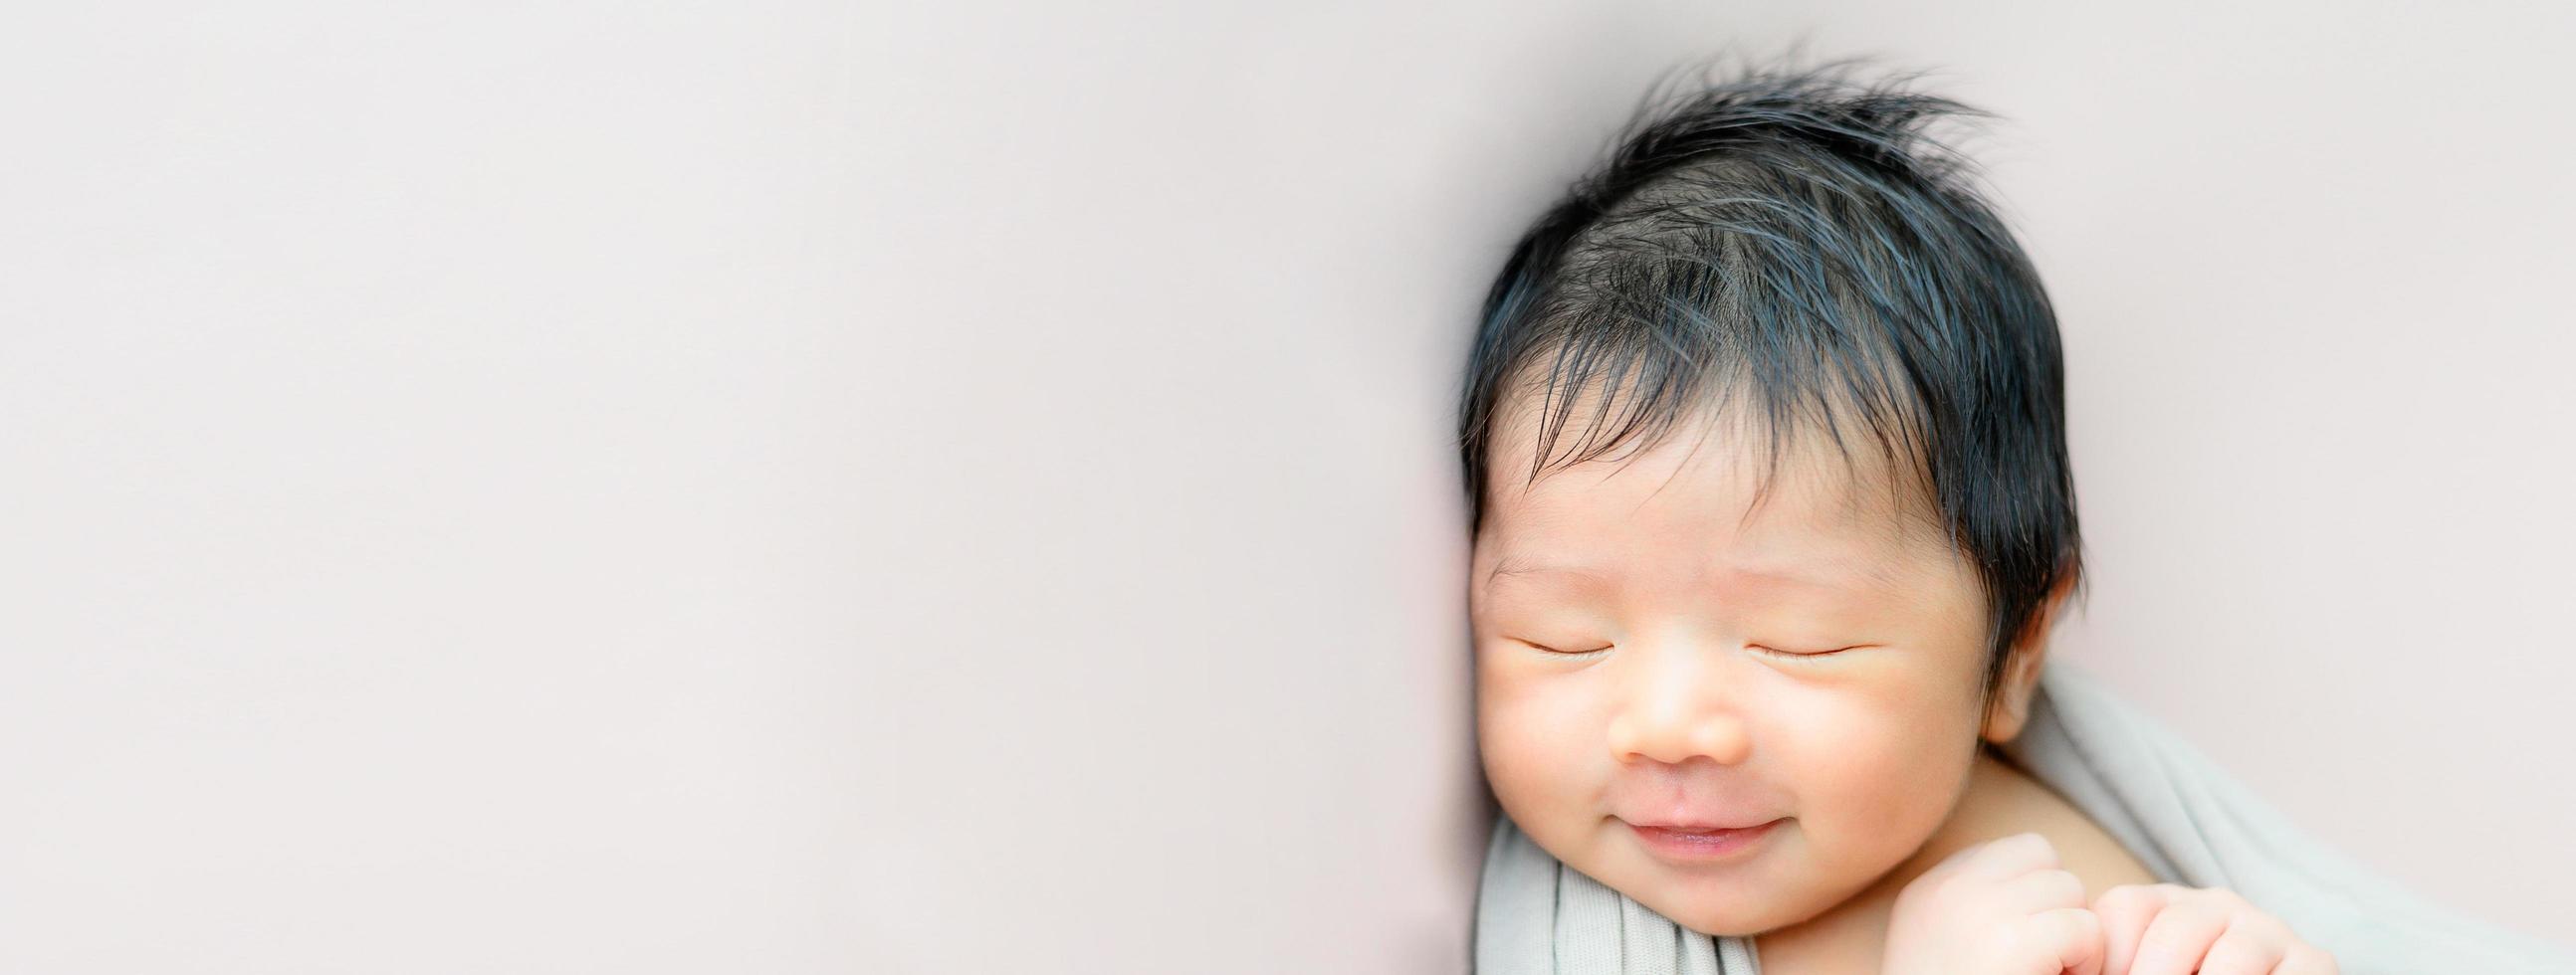 bebé recién nacido asiático durmiendo foto